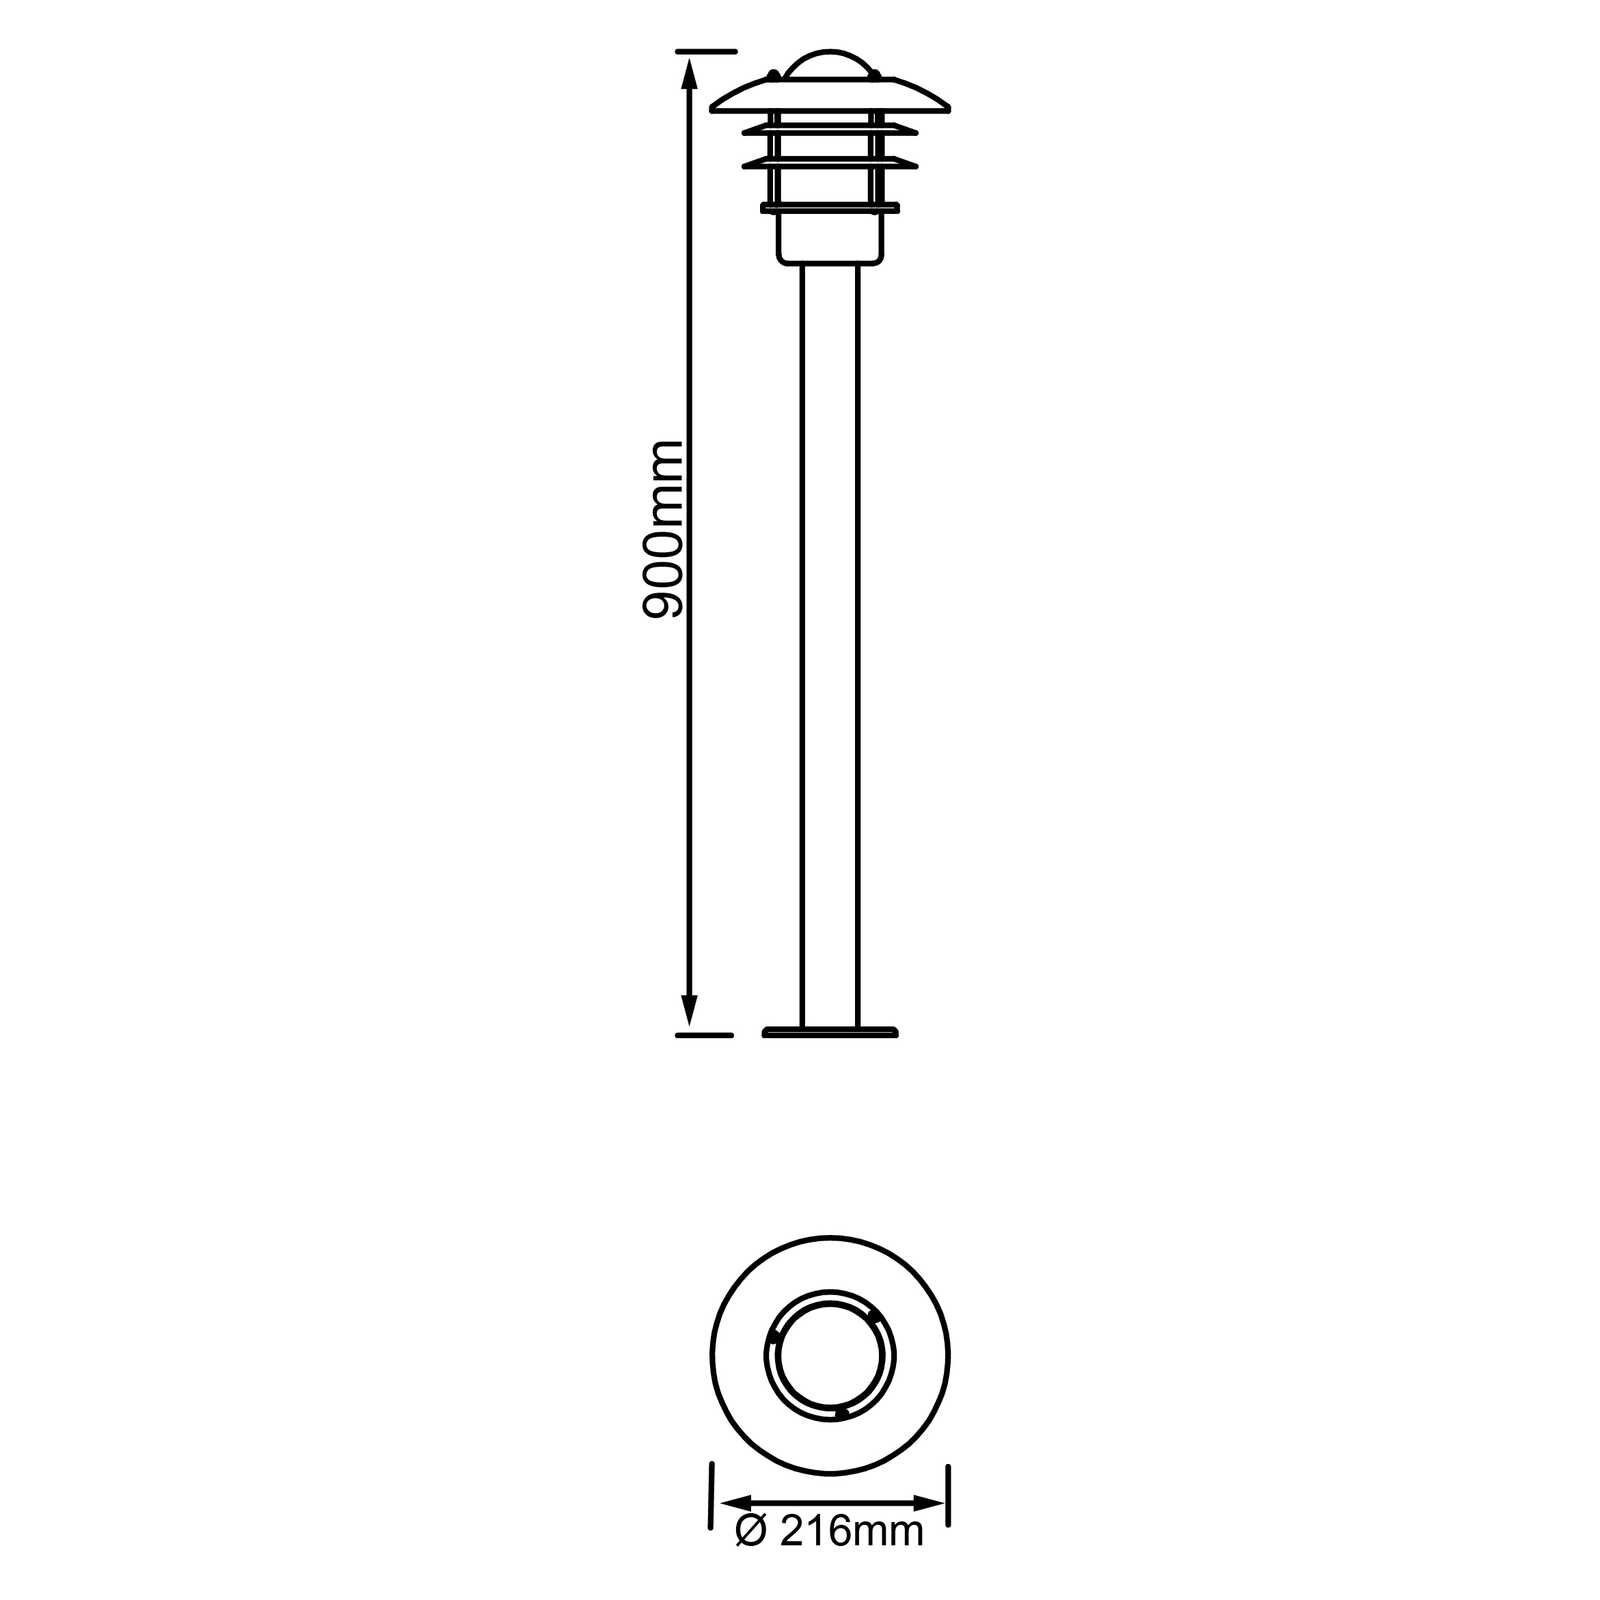             Lámpara de pie metálica para exterior - Pepe 2 - Metallic
        